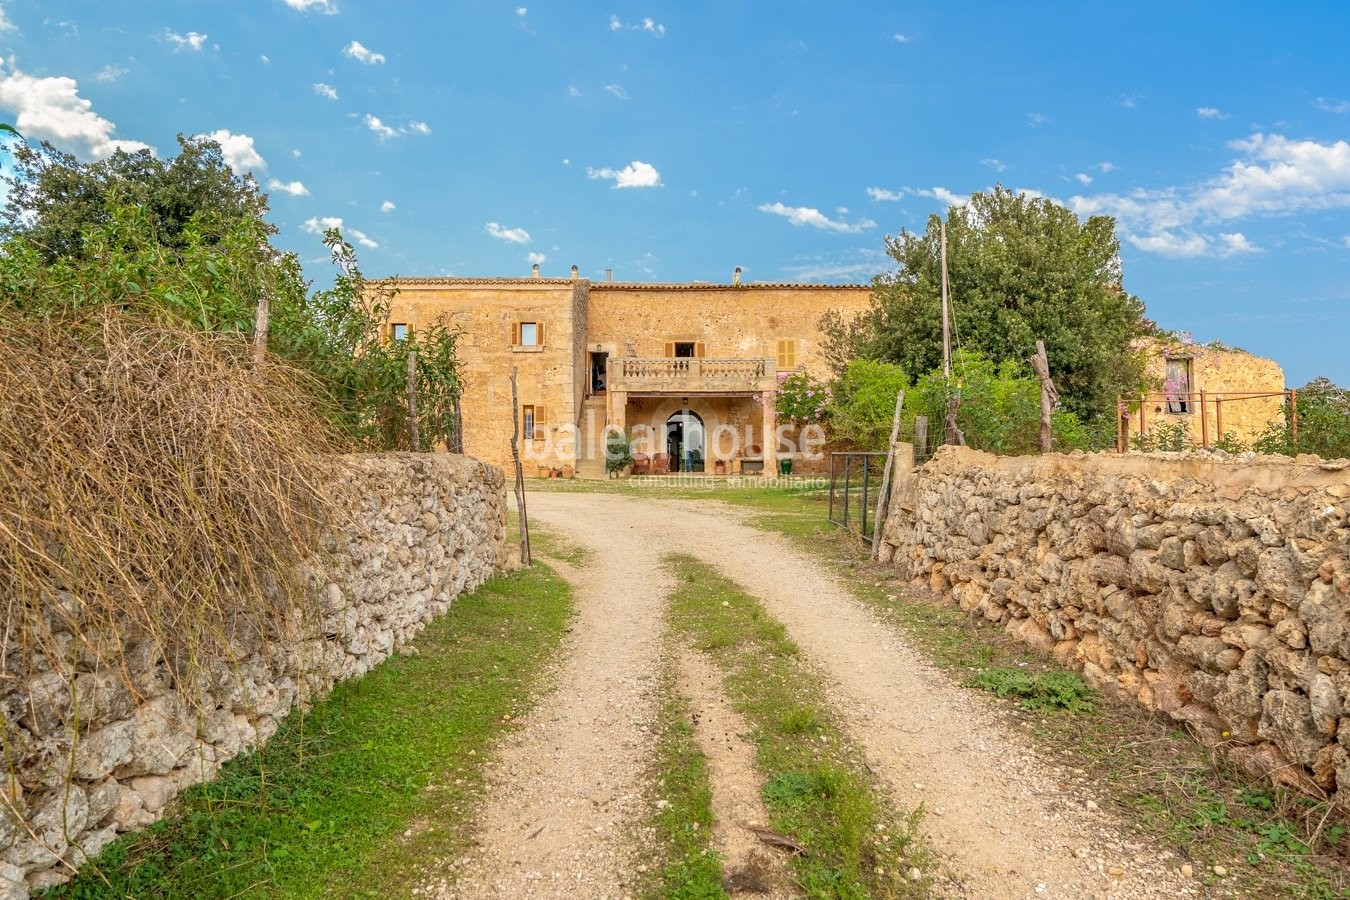 Fantastische rustikale Finca im Zentrum von Mallorca, umgeben von einem großen Grundstück und Natur.